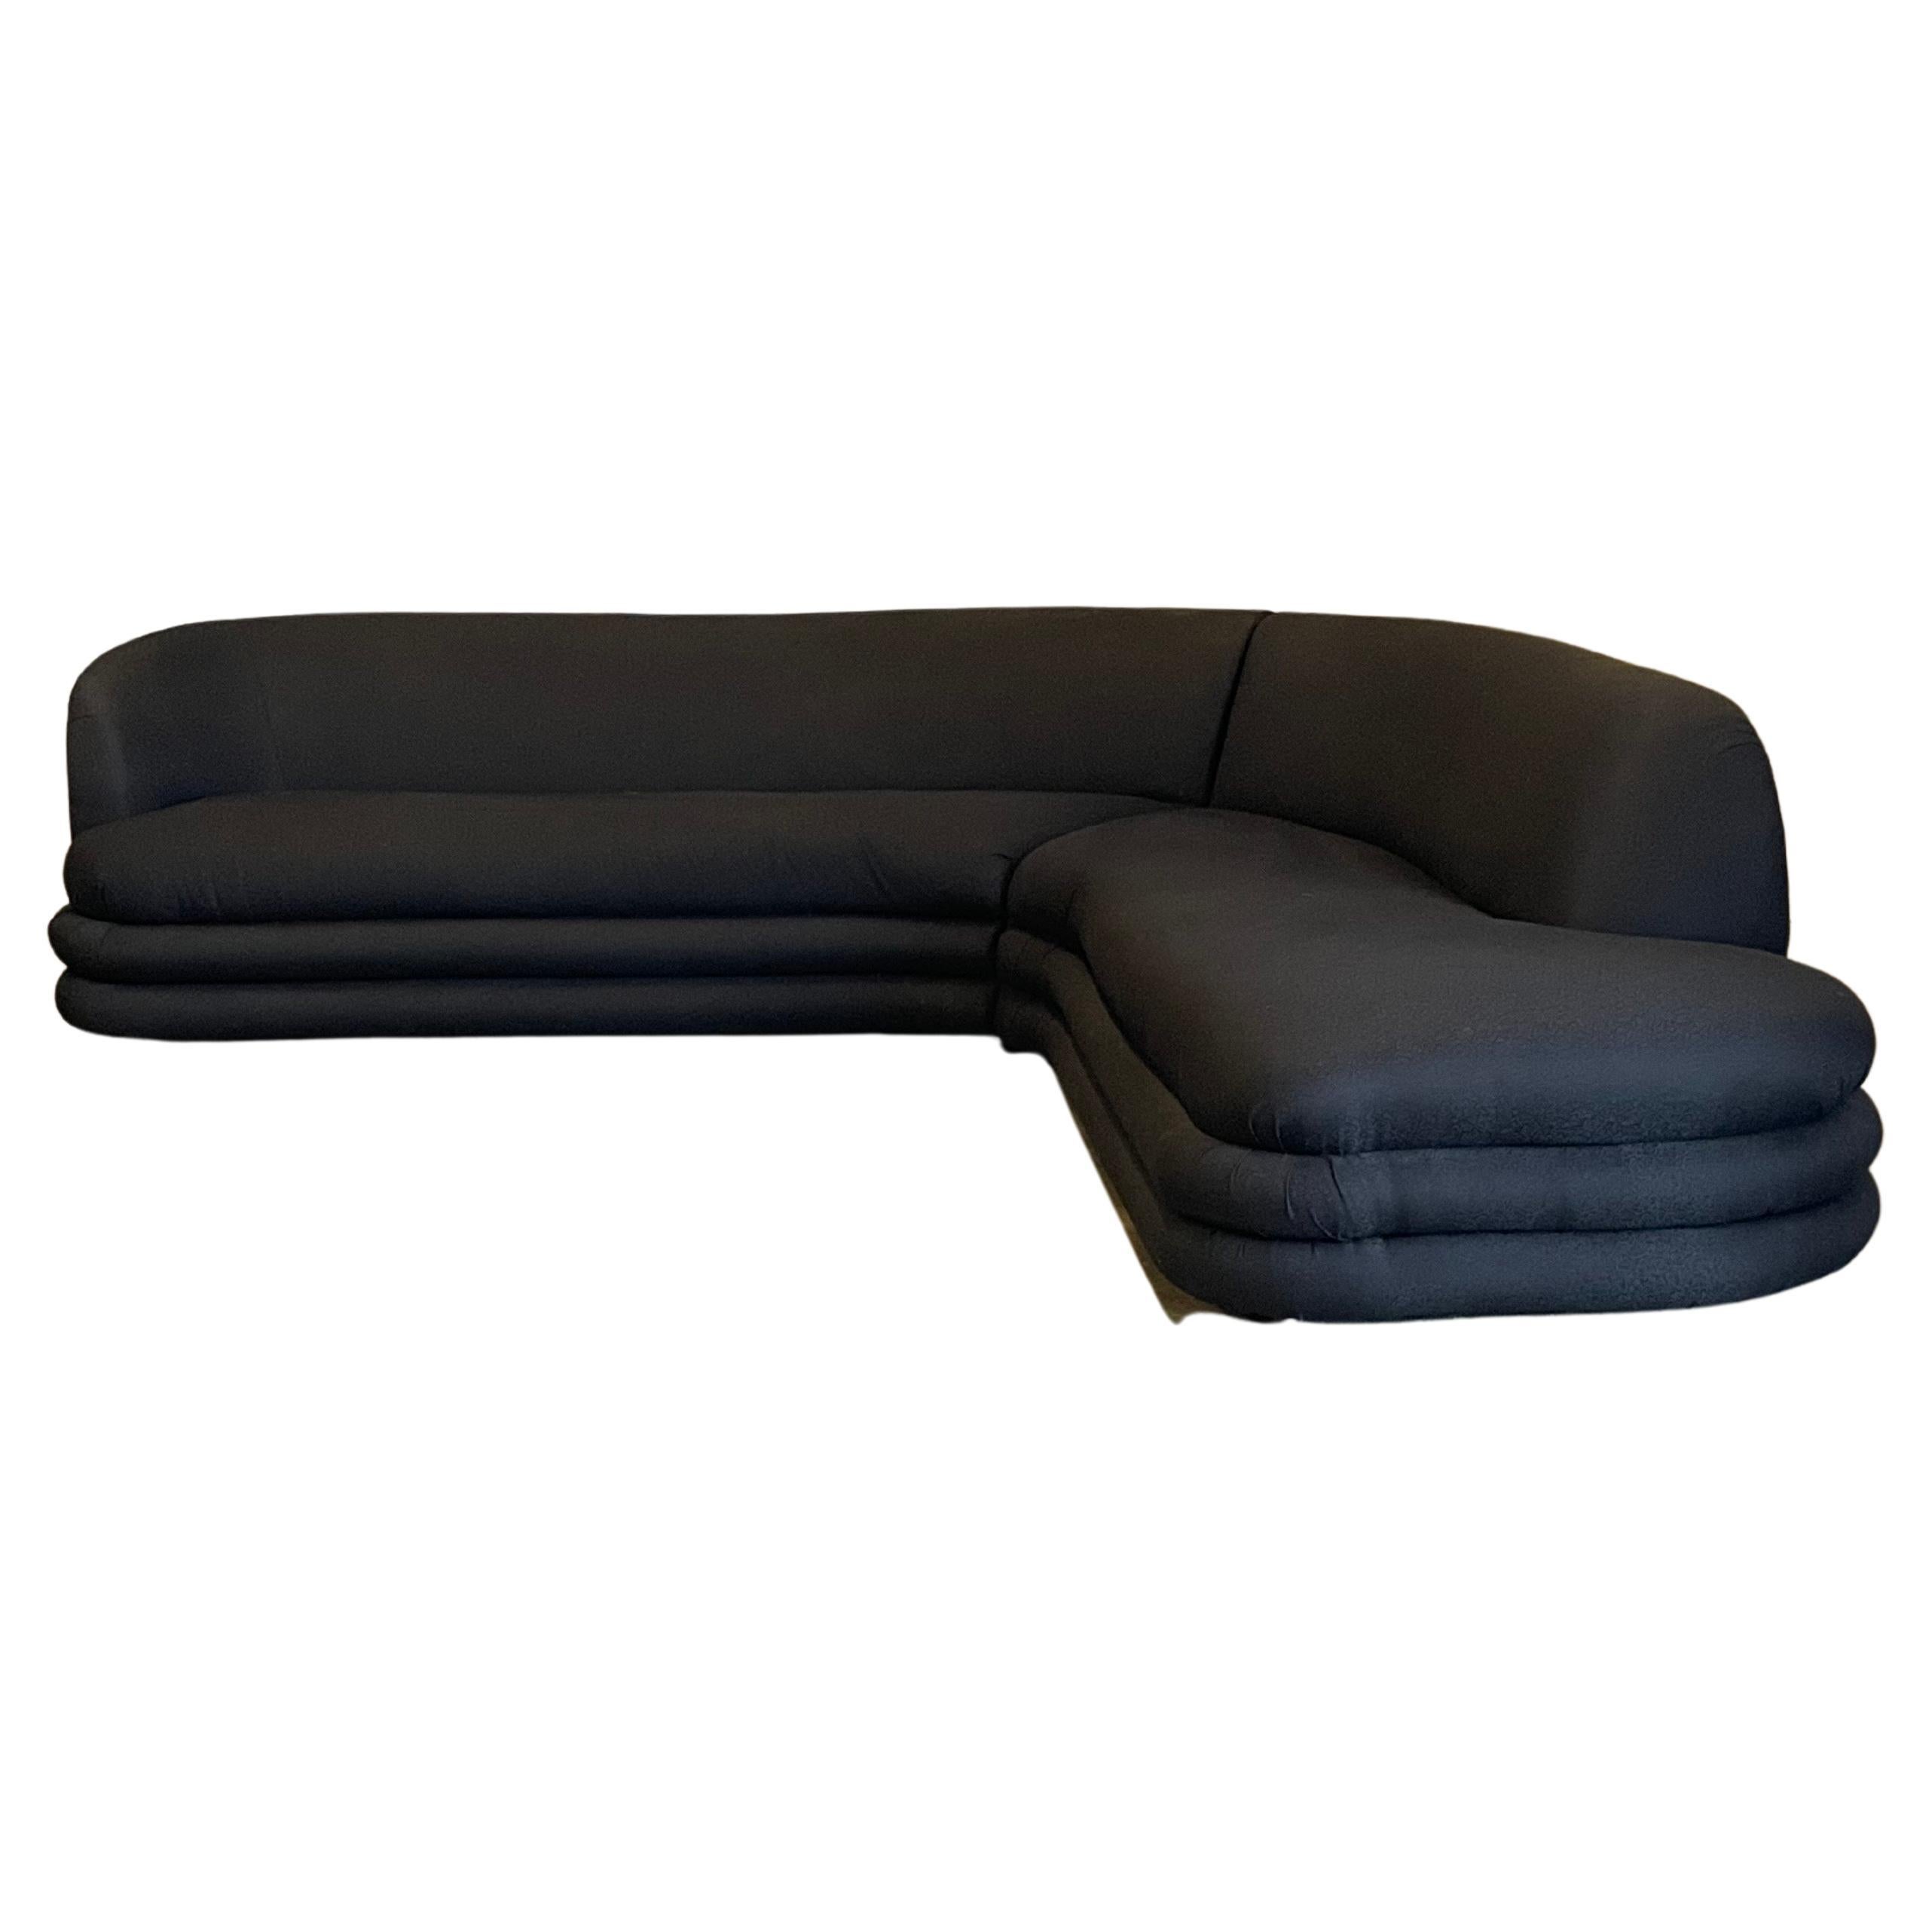 Intéressant canapé de style postmoderne avec une forme serpentine. Grand canapé organique en forme de L avec une empreinte de pied de 106